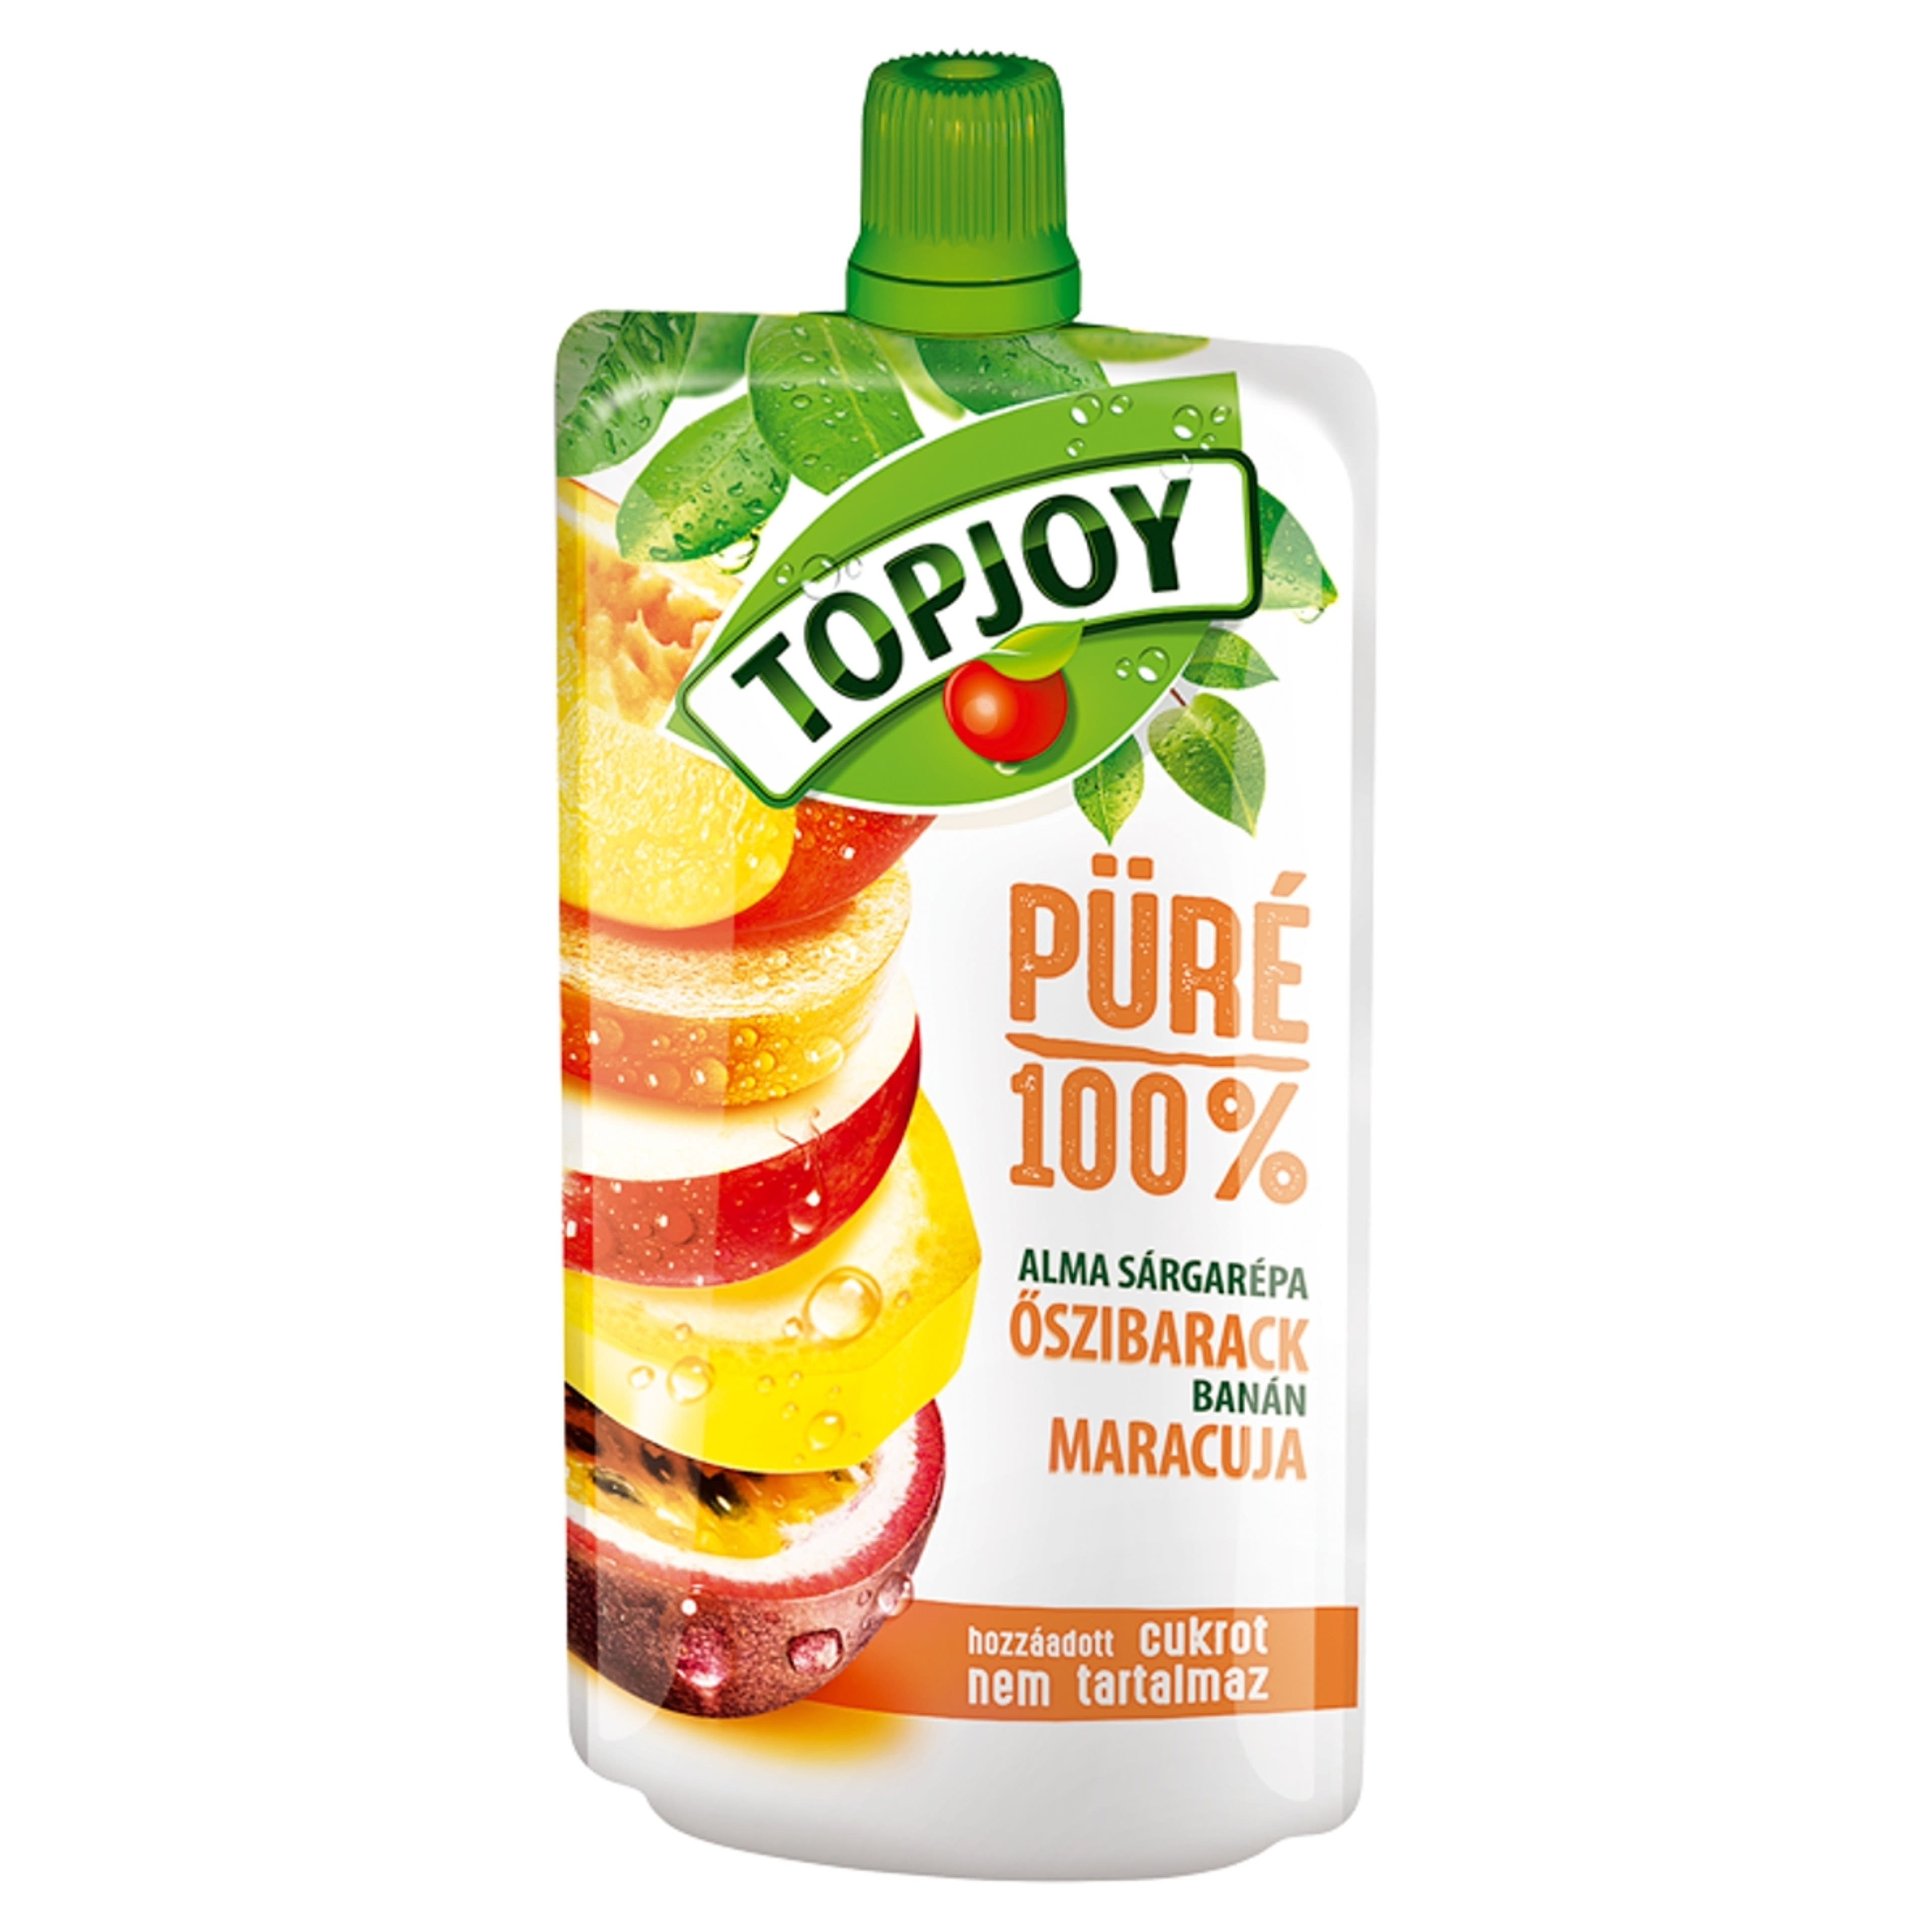 Topjoy pure oszi-maracuja - 120 g-1